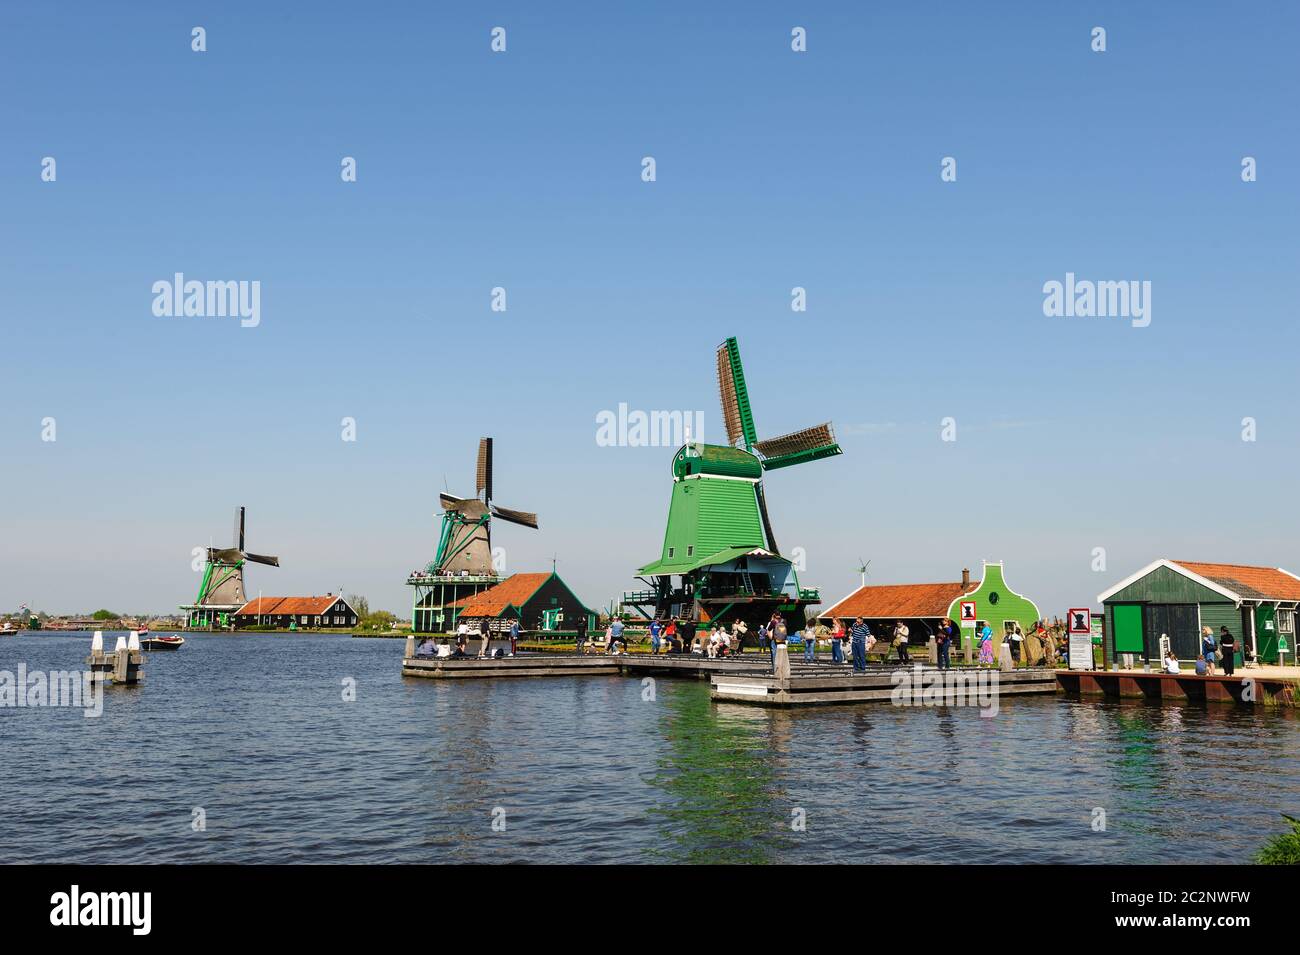 Moulins à vent traditionnel néerlandais à Zaanse, Pays-Bas Banque D'Images